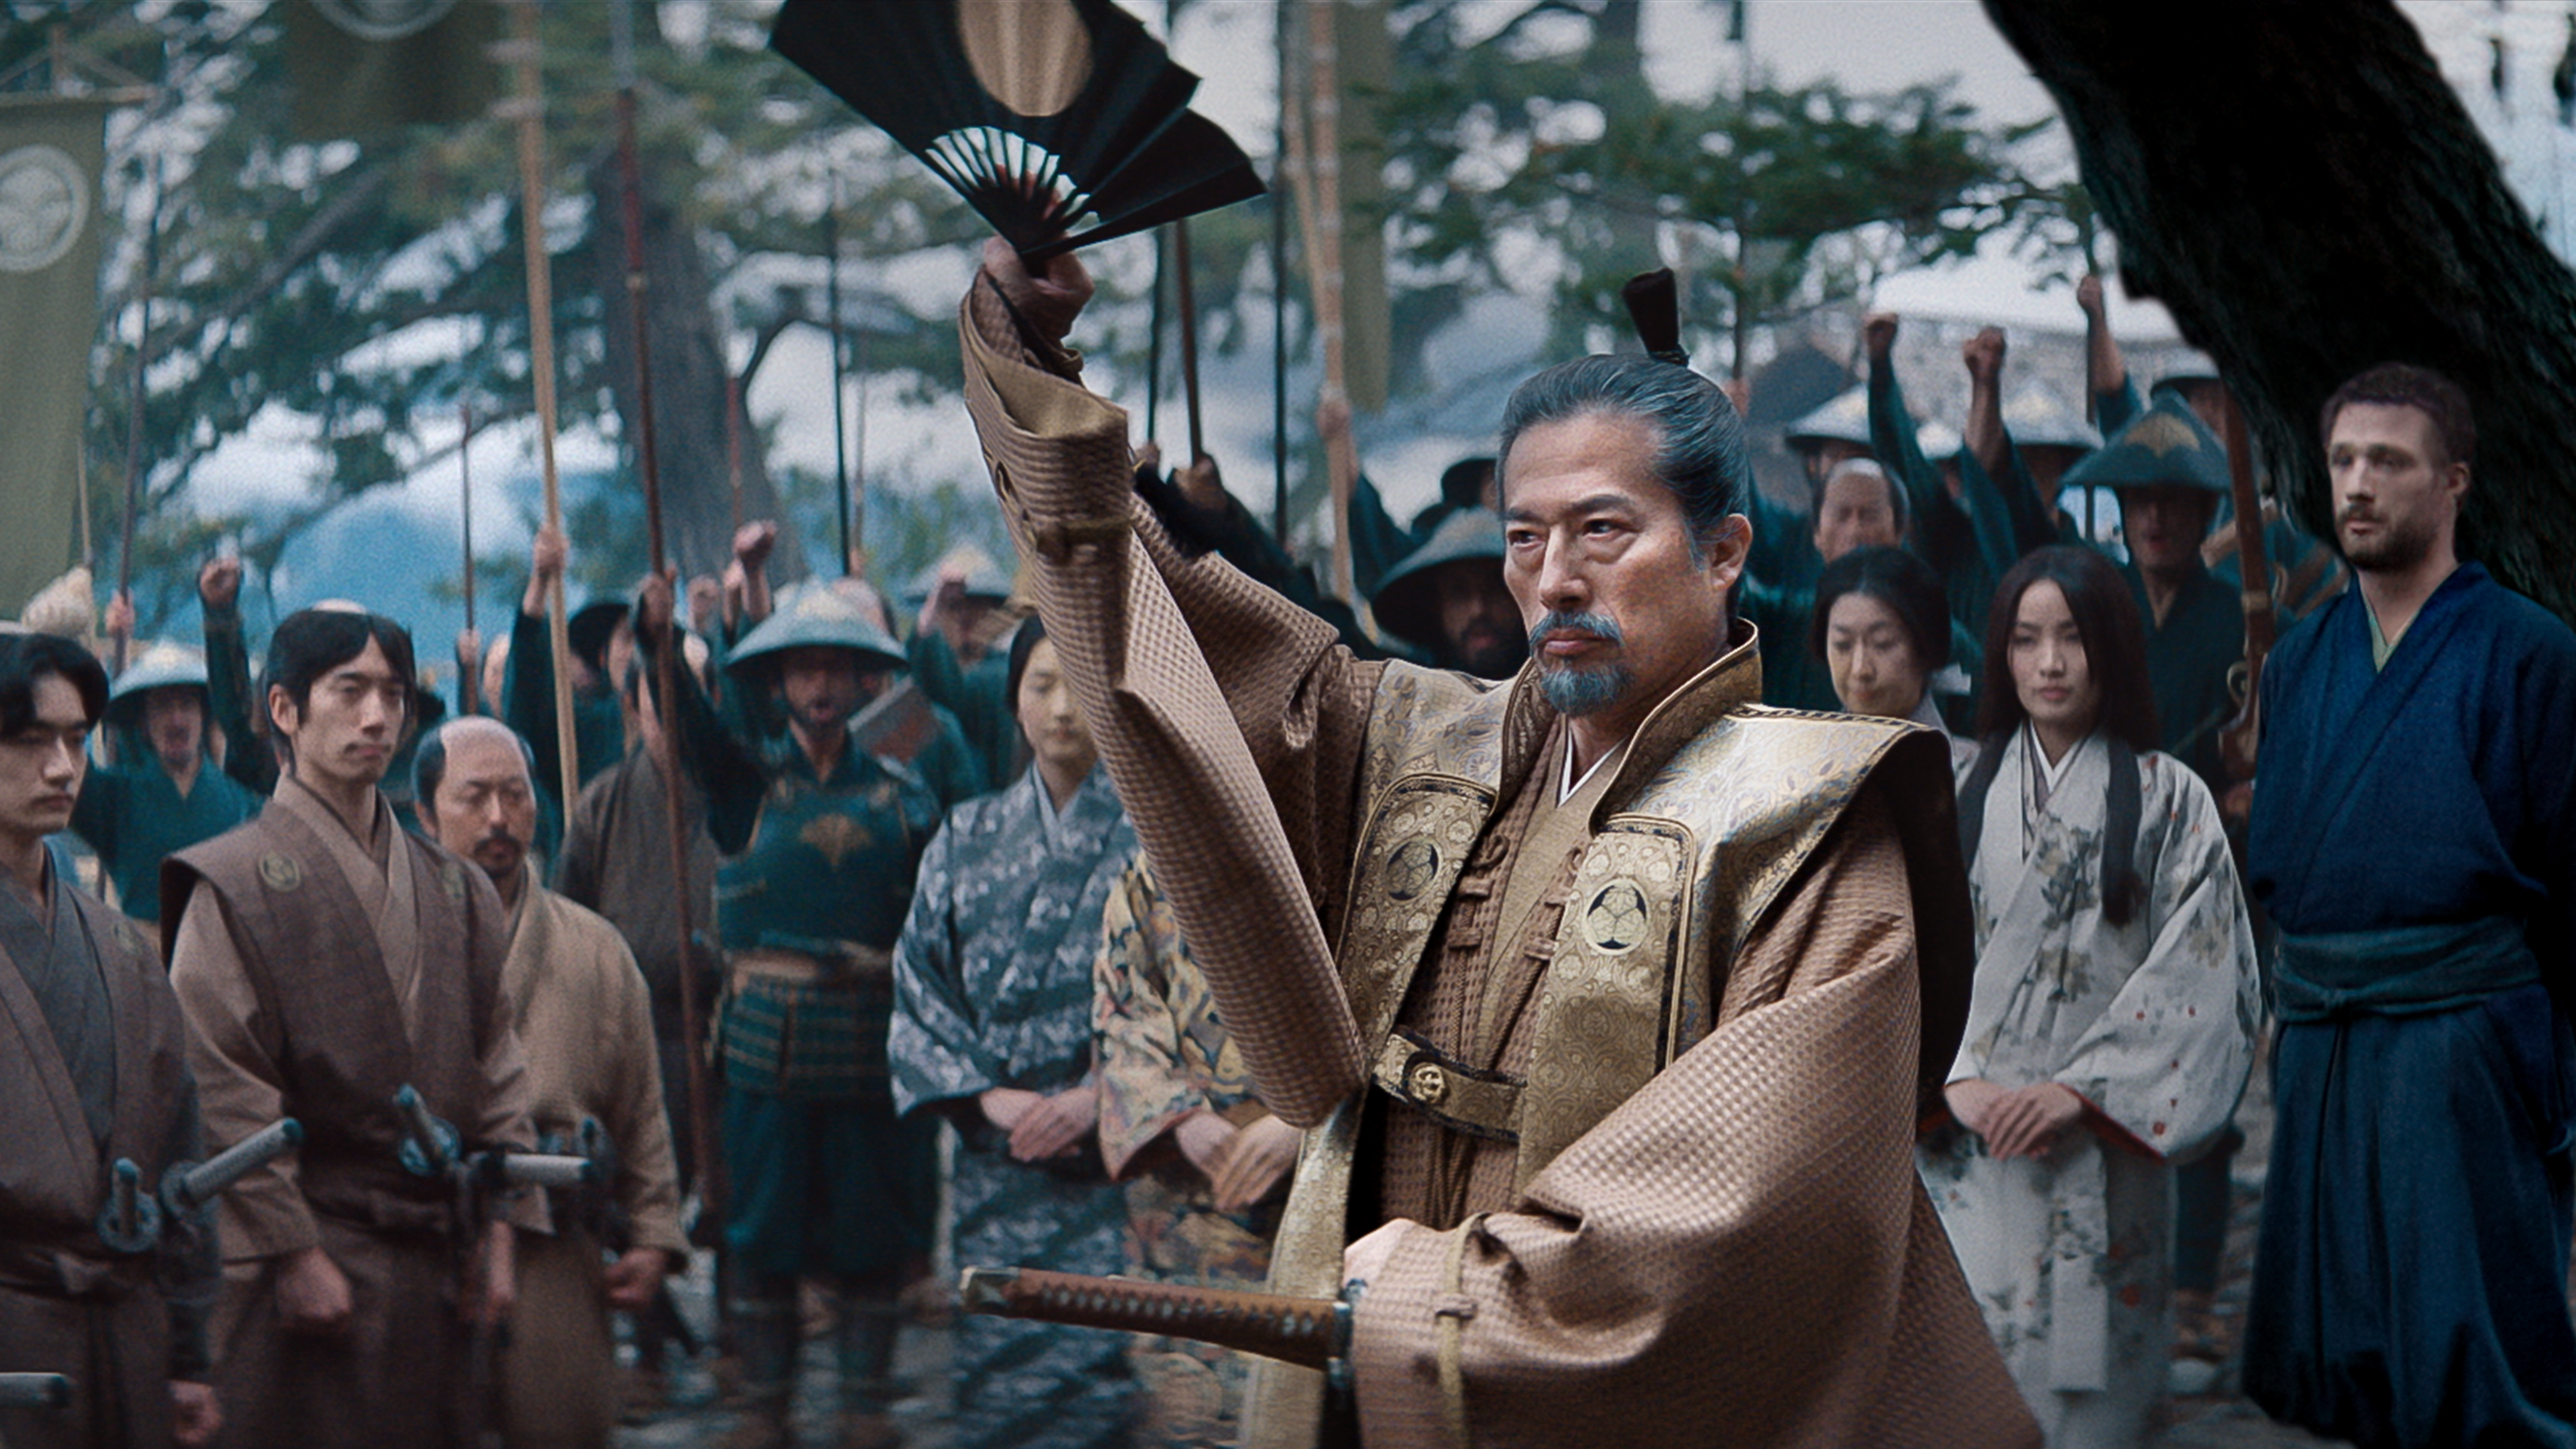 Xógum: A Gloriosa Saga do Japão